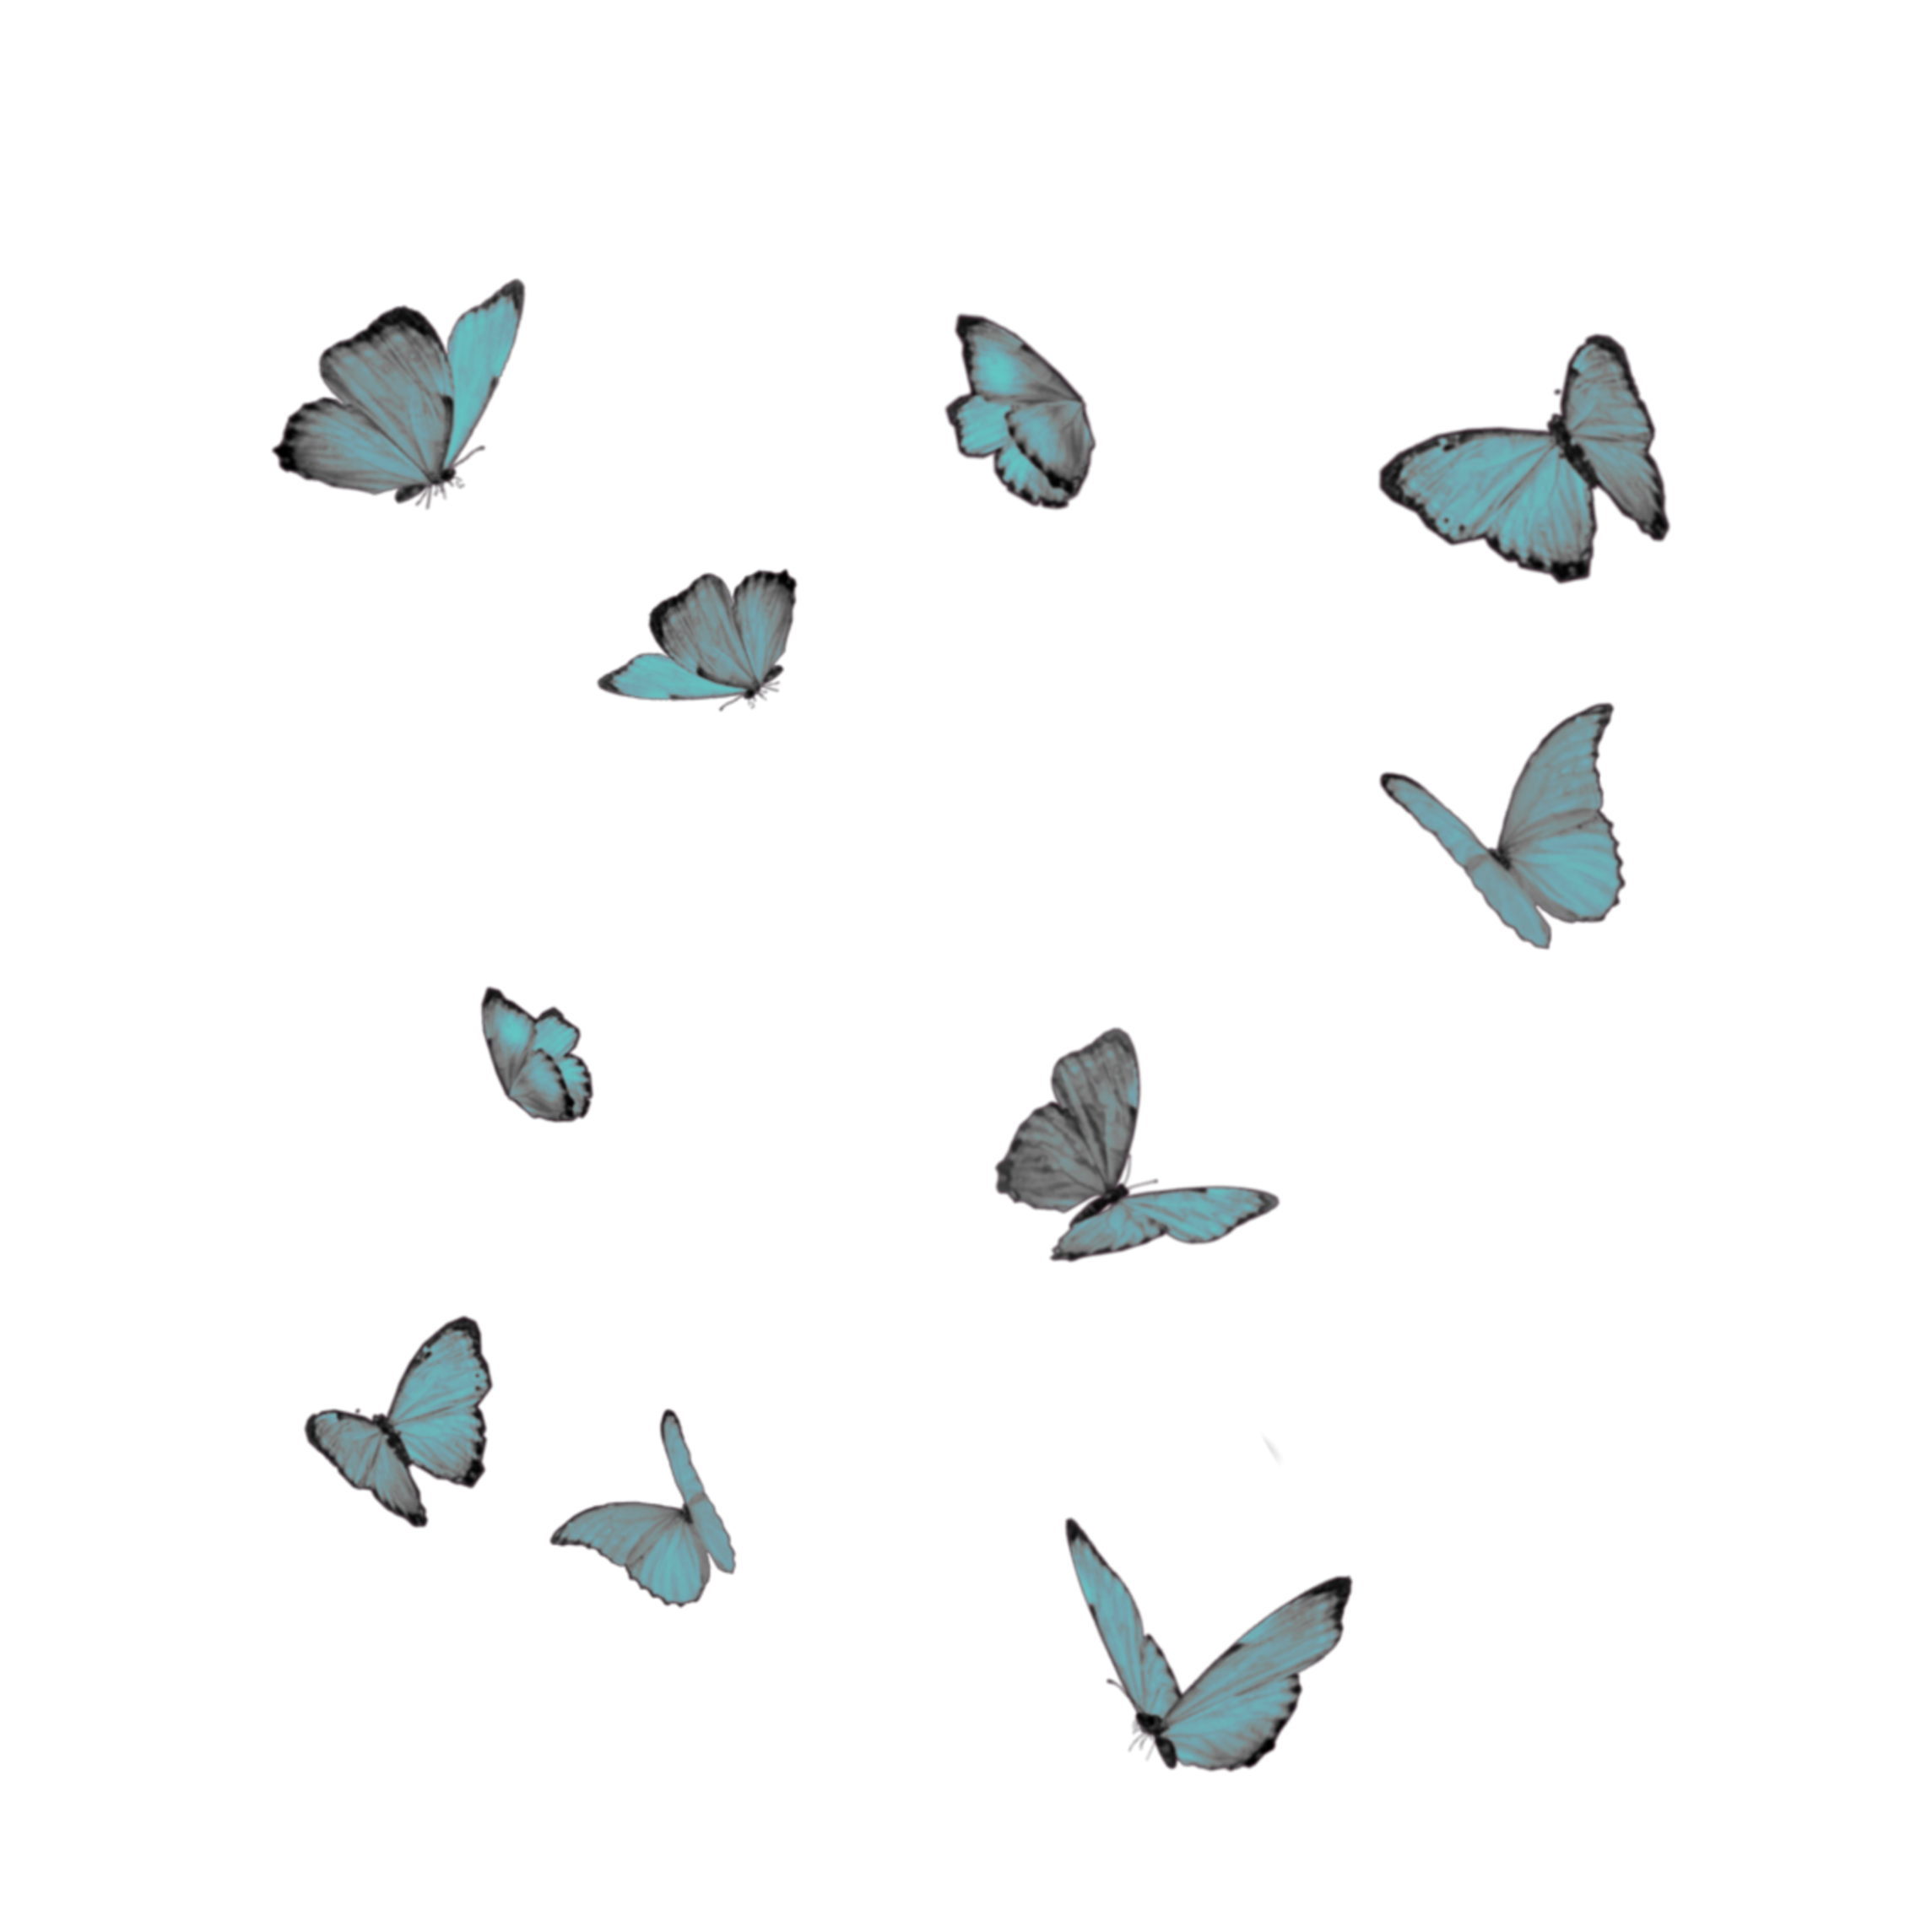 mariposas celeste freetoedit sticker by @oracionescatlicas